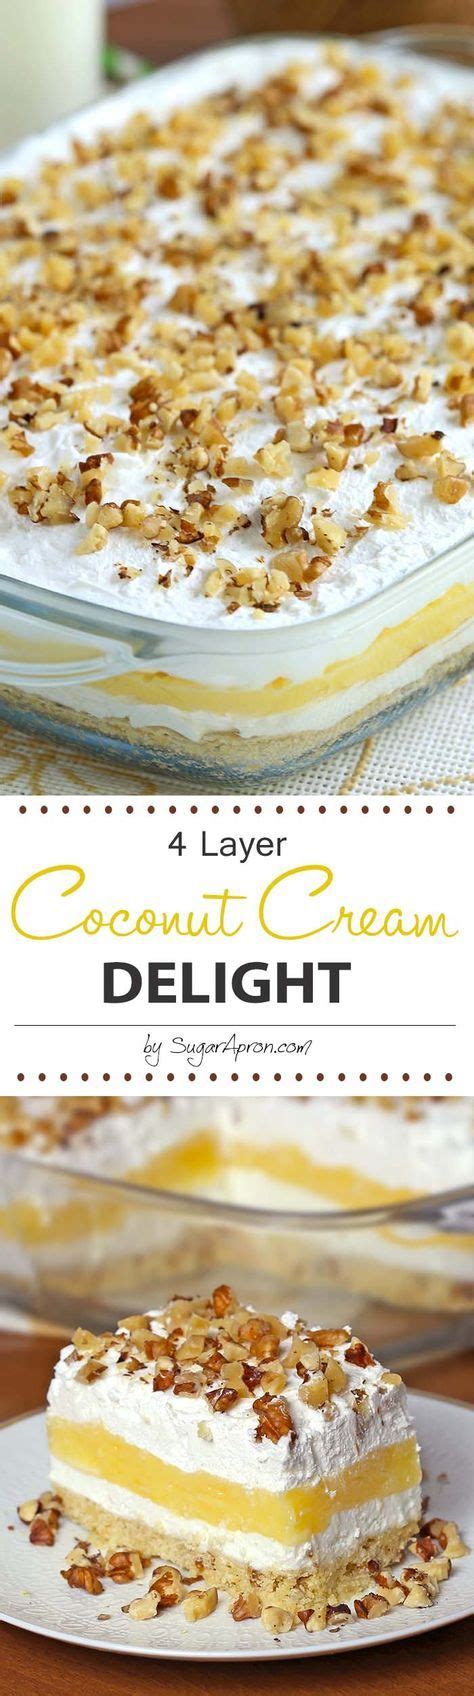 Coconut Cream Delight Recipe Desserts Coconut Recipes Dessert Recipes